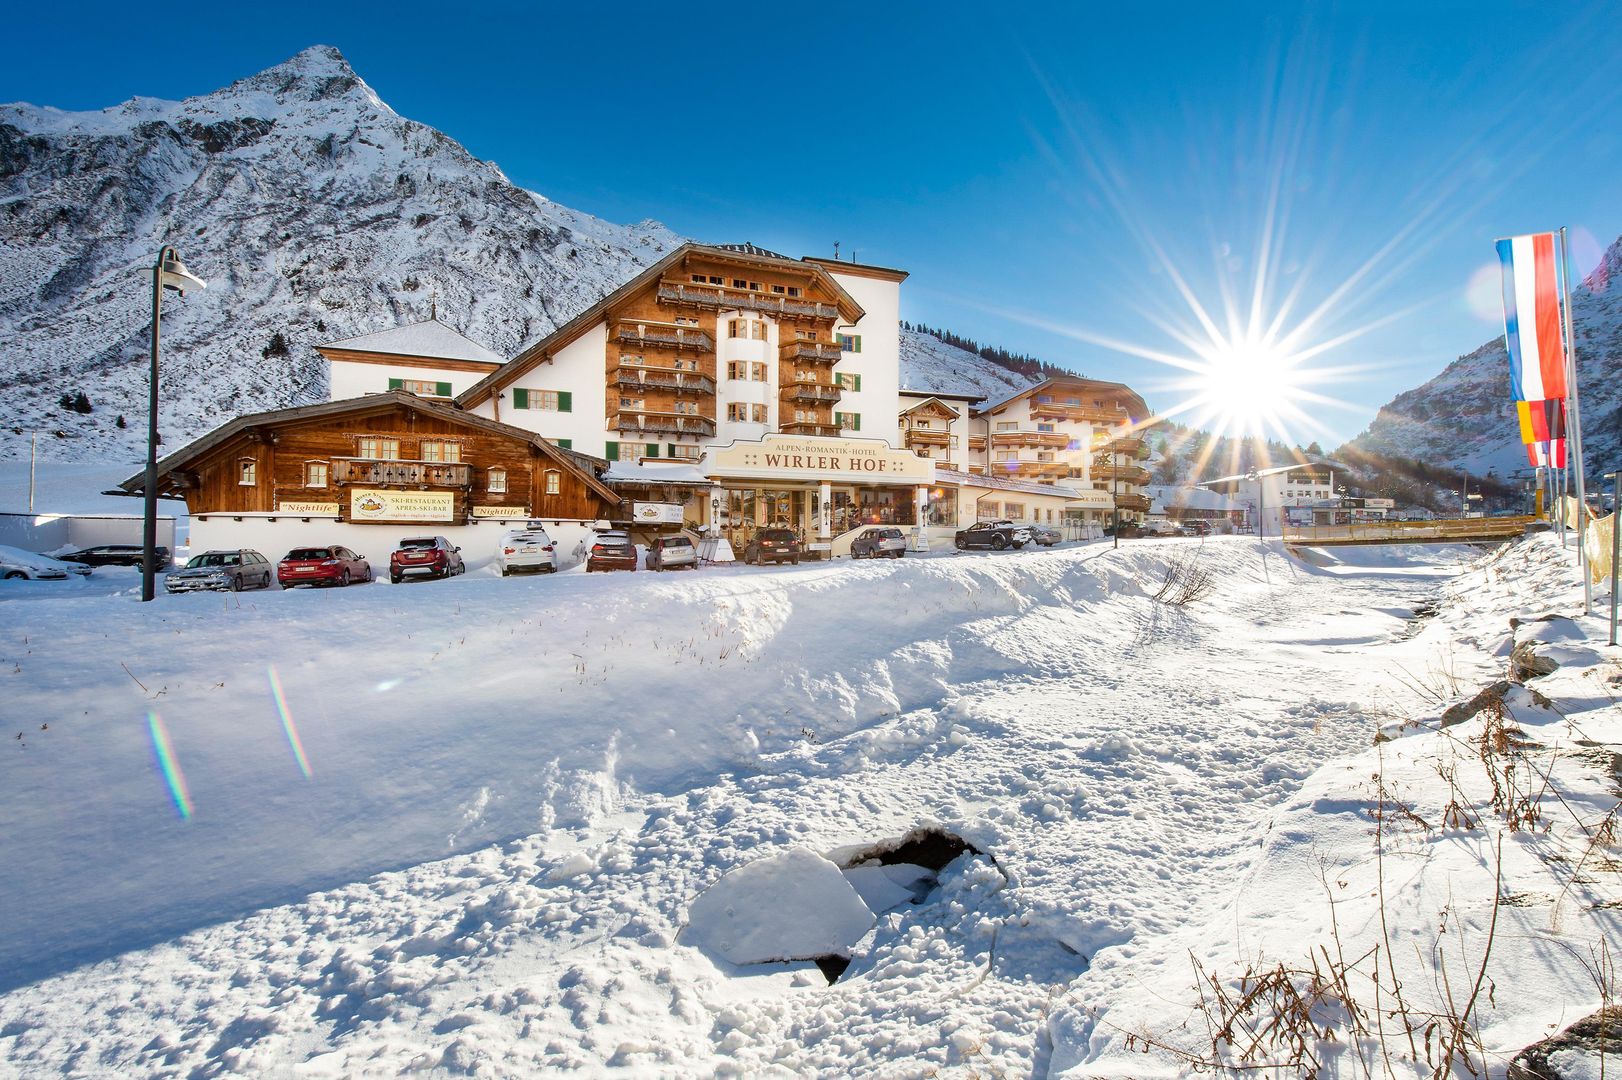 Meer info over Alpenromantik Hotel Wirlerhof  bij Wintertrex